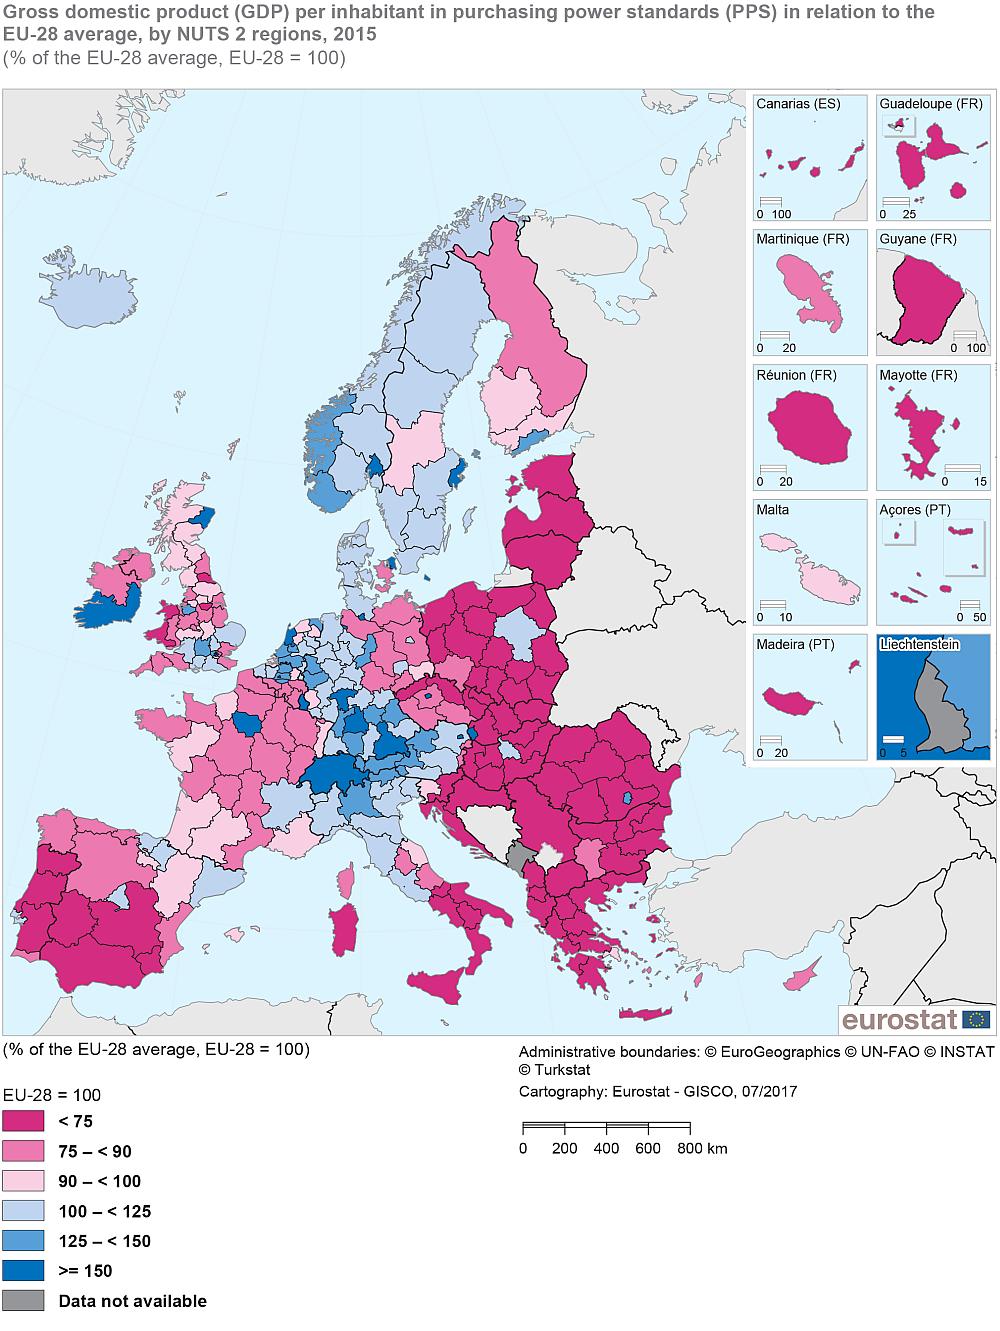 3 Økonomisk vekst og næringsutvikling ner med høyt BRP per innbygger hovedsakelig der hovedstedene ligger, men også i nord-østre deler av Spania og i Skottland.